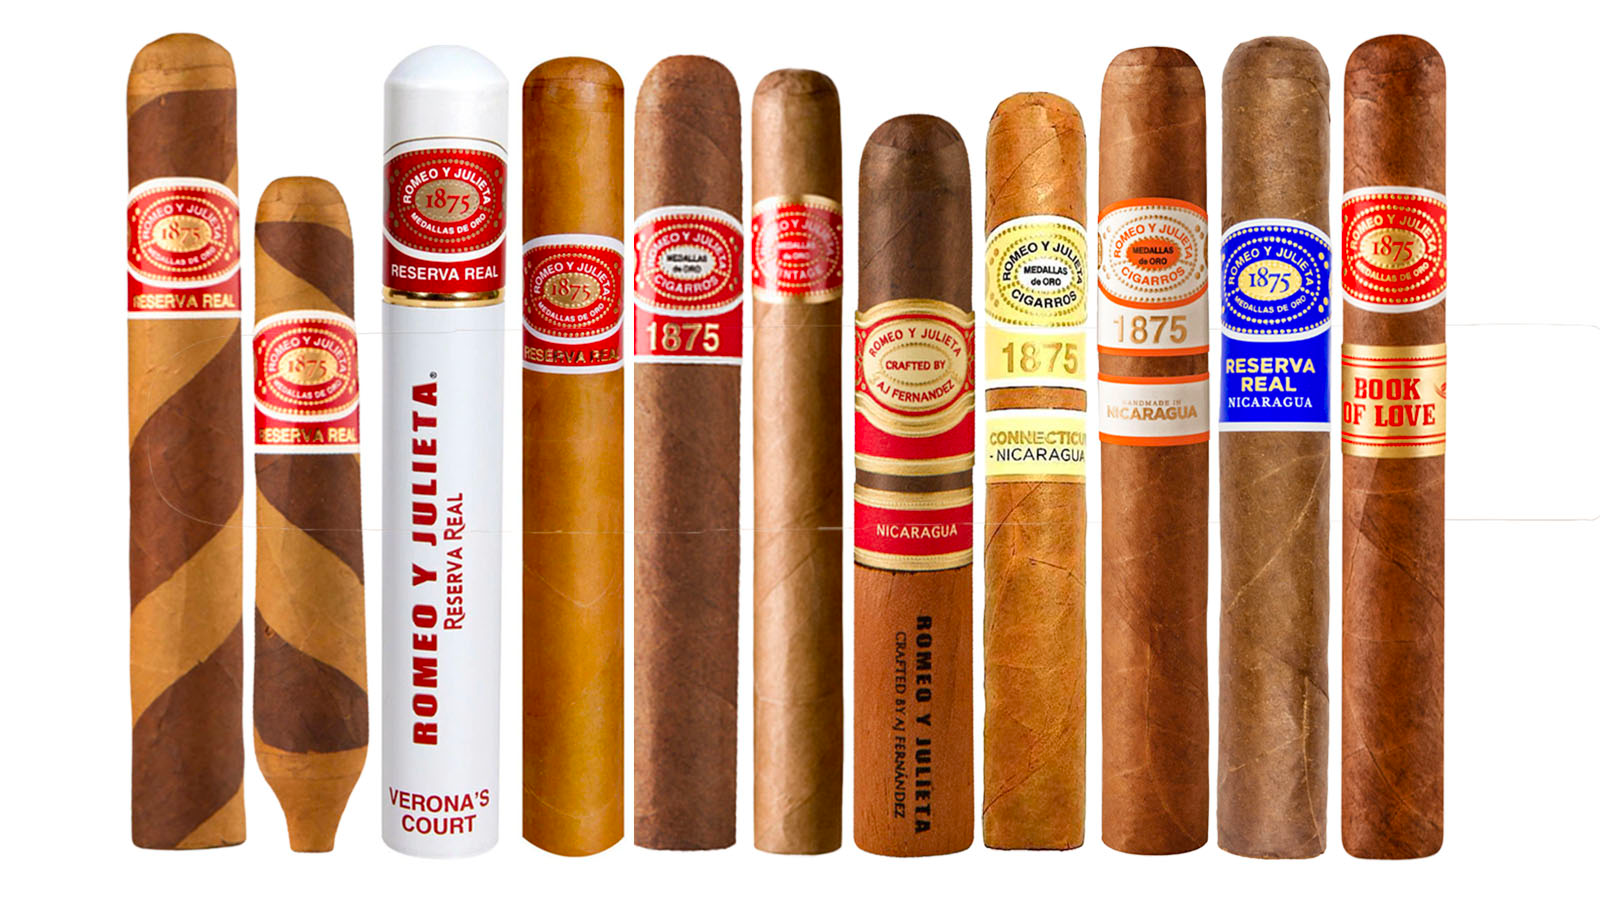 A selection of Non-Cuban Romeo y Julieta Cigars